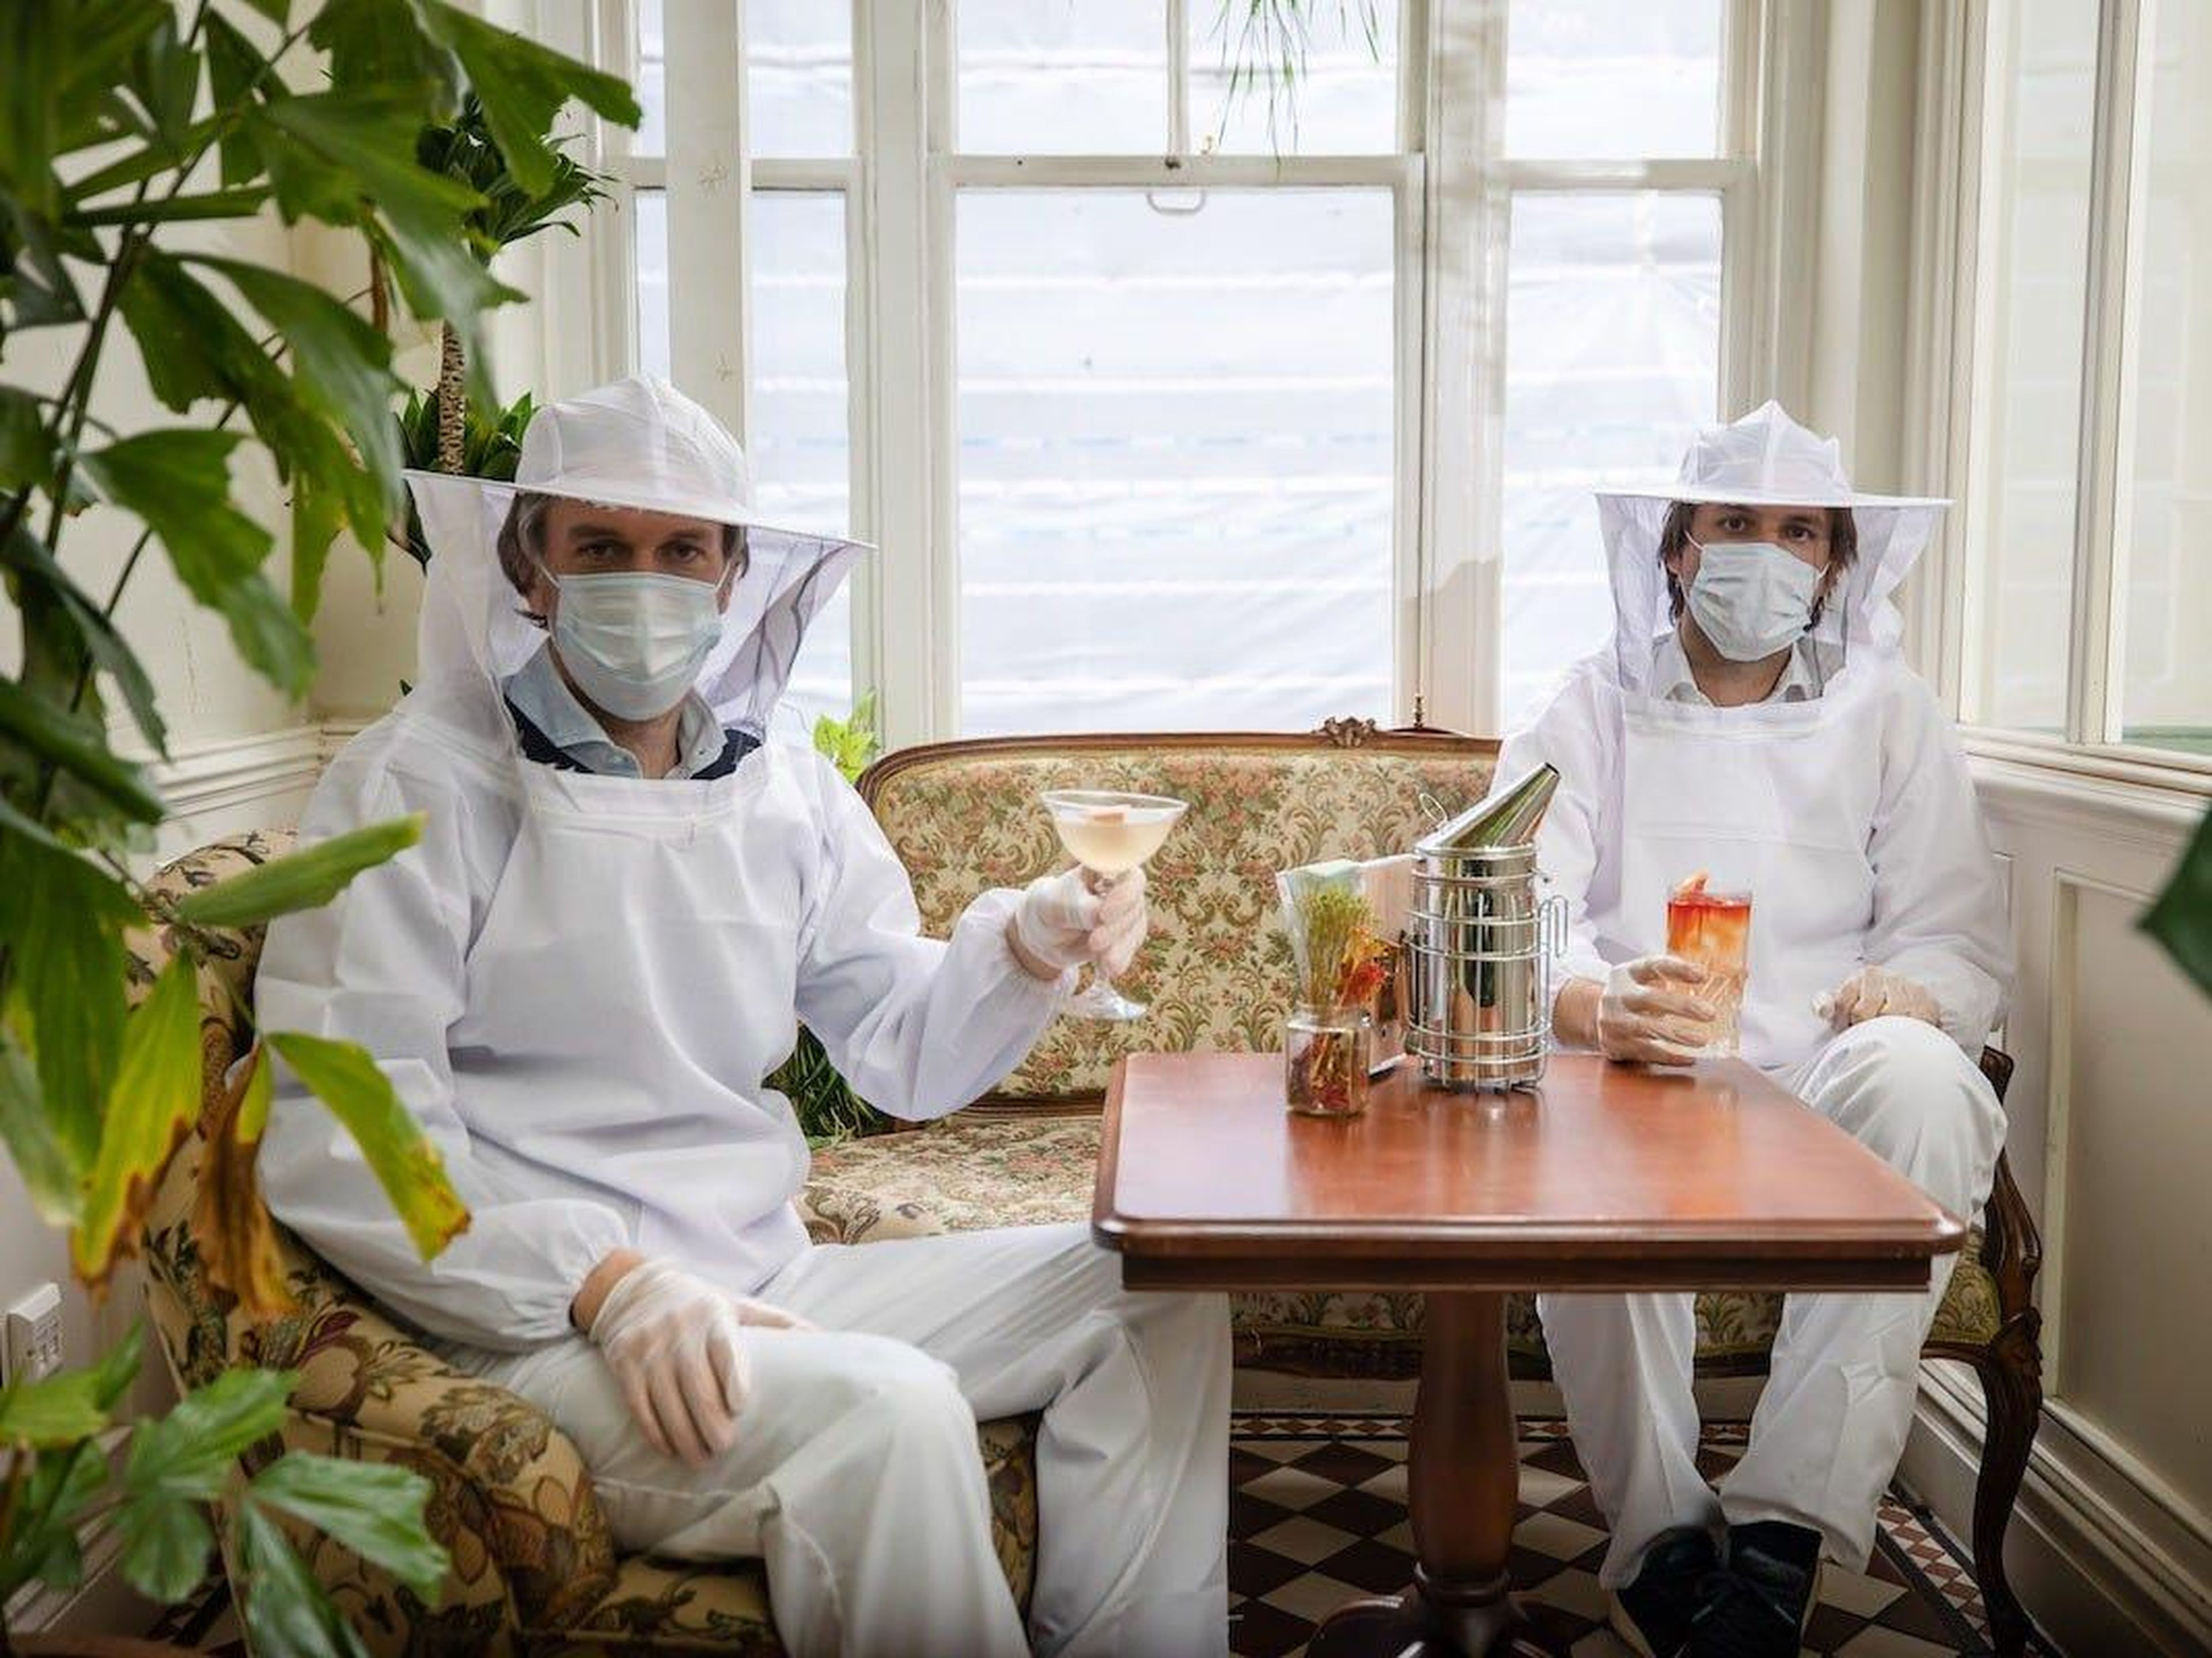 El bar de temática botánica planea usar los trajes de apicultor como EPIS.